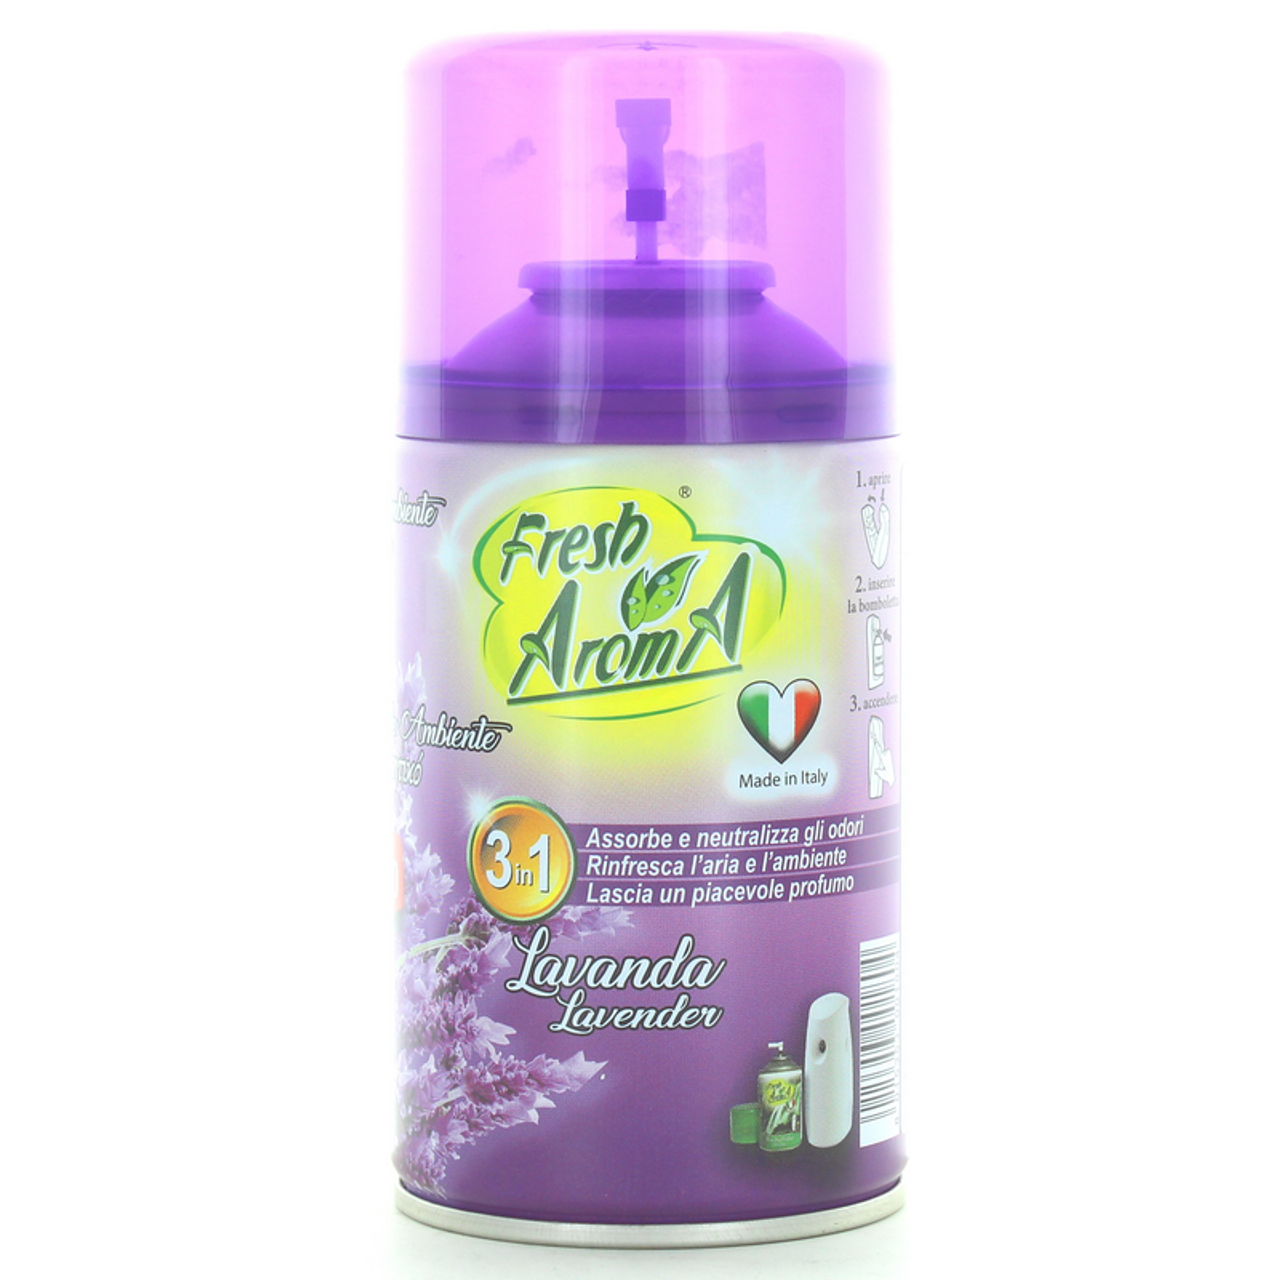 Ricarica Per Diffusore Per Ambiente Automatico Spray Rome Fresh Aroma 250  ml - Piazza Mercato Casa